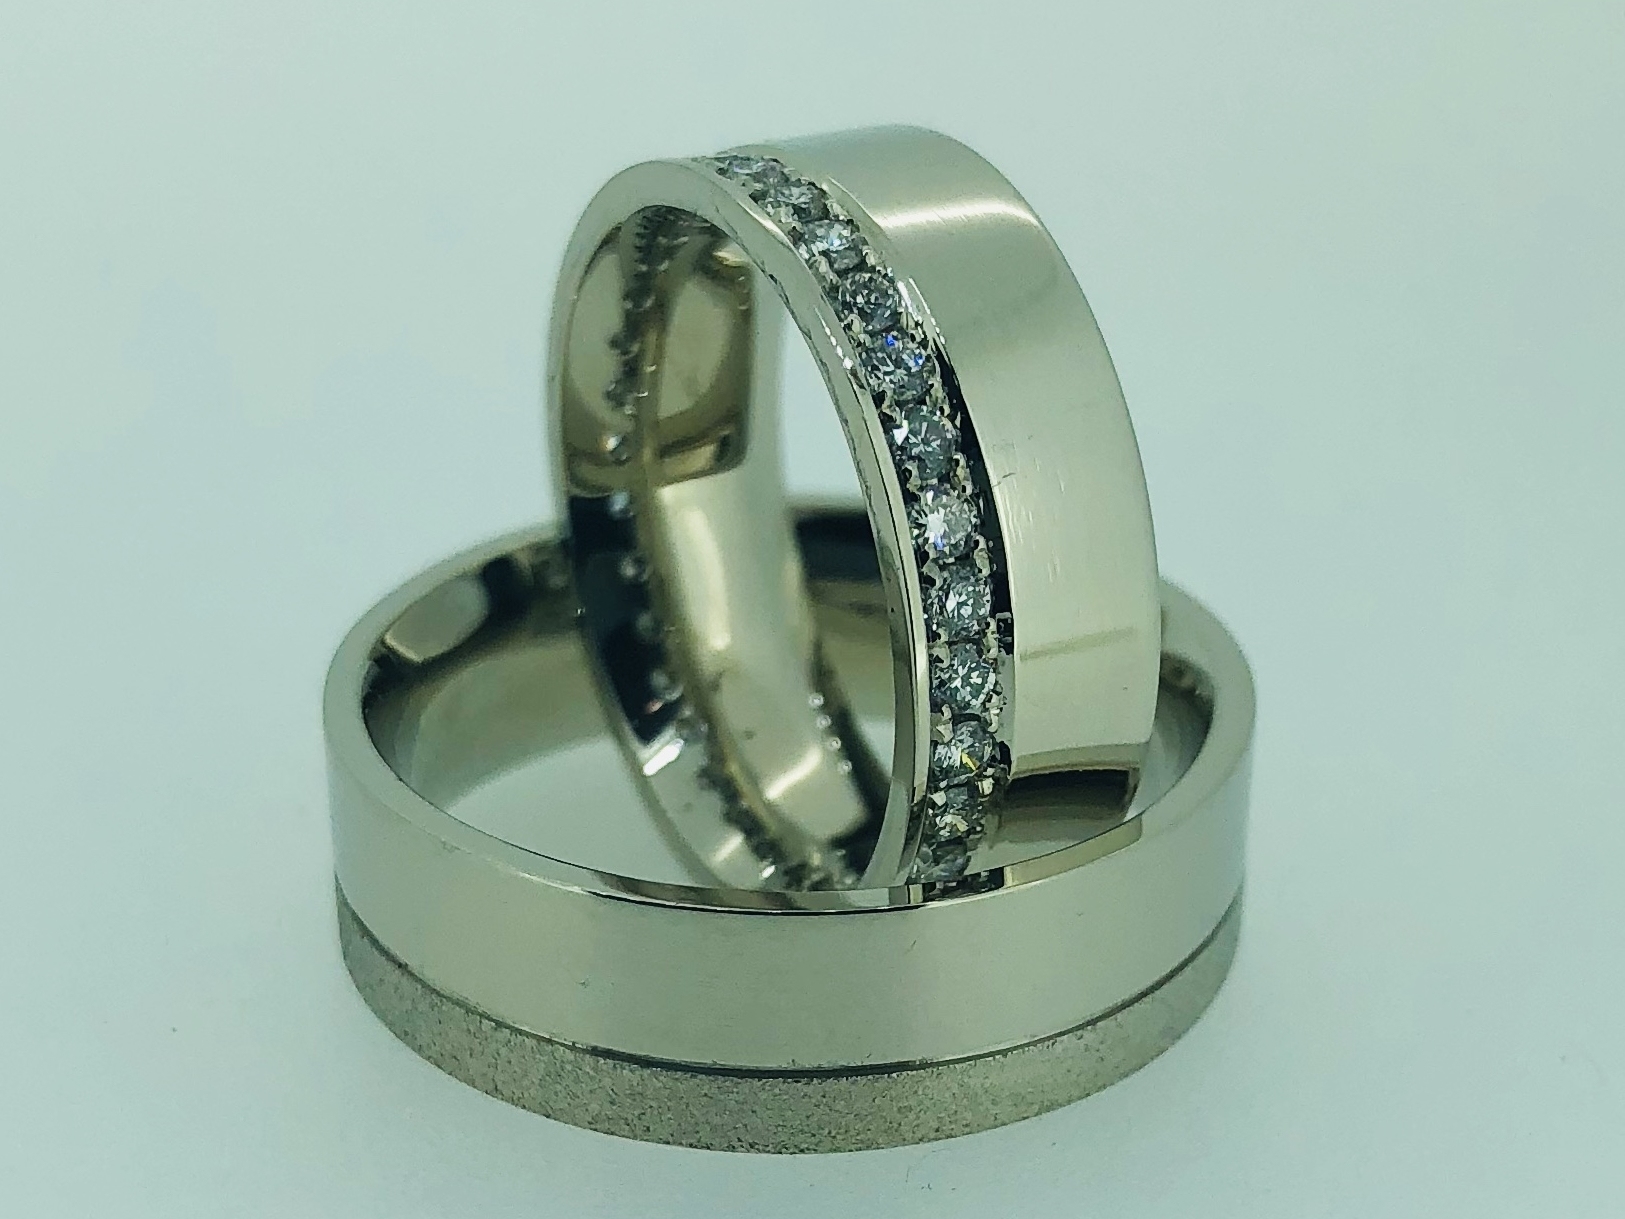 Vestuviniai žiedai dizainas 10